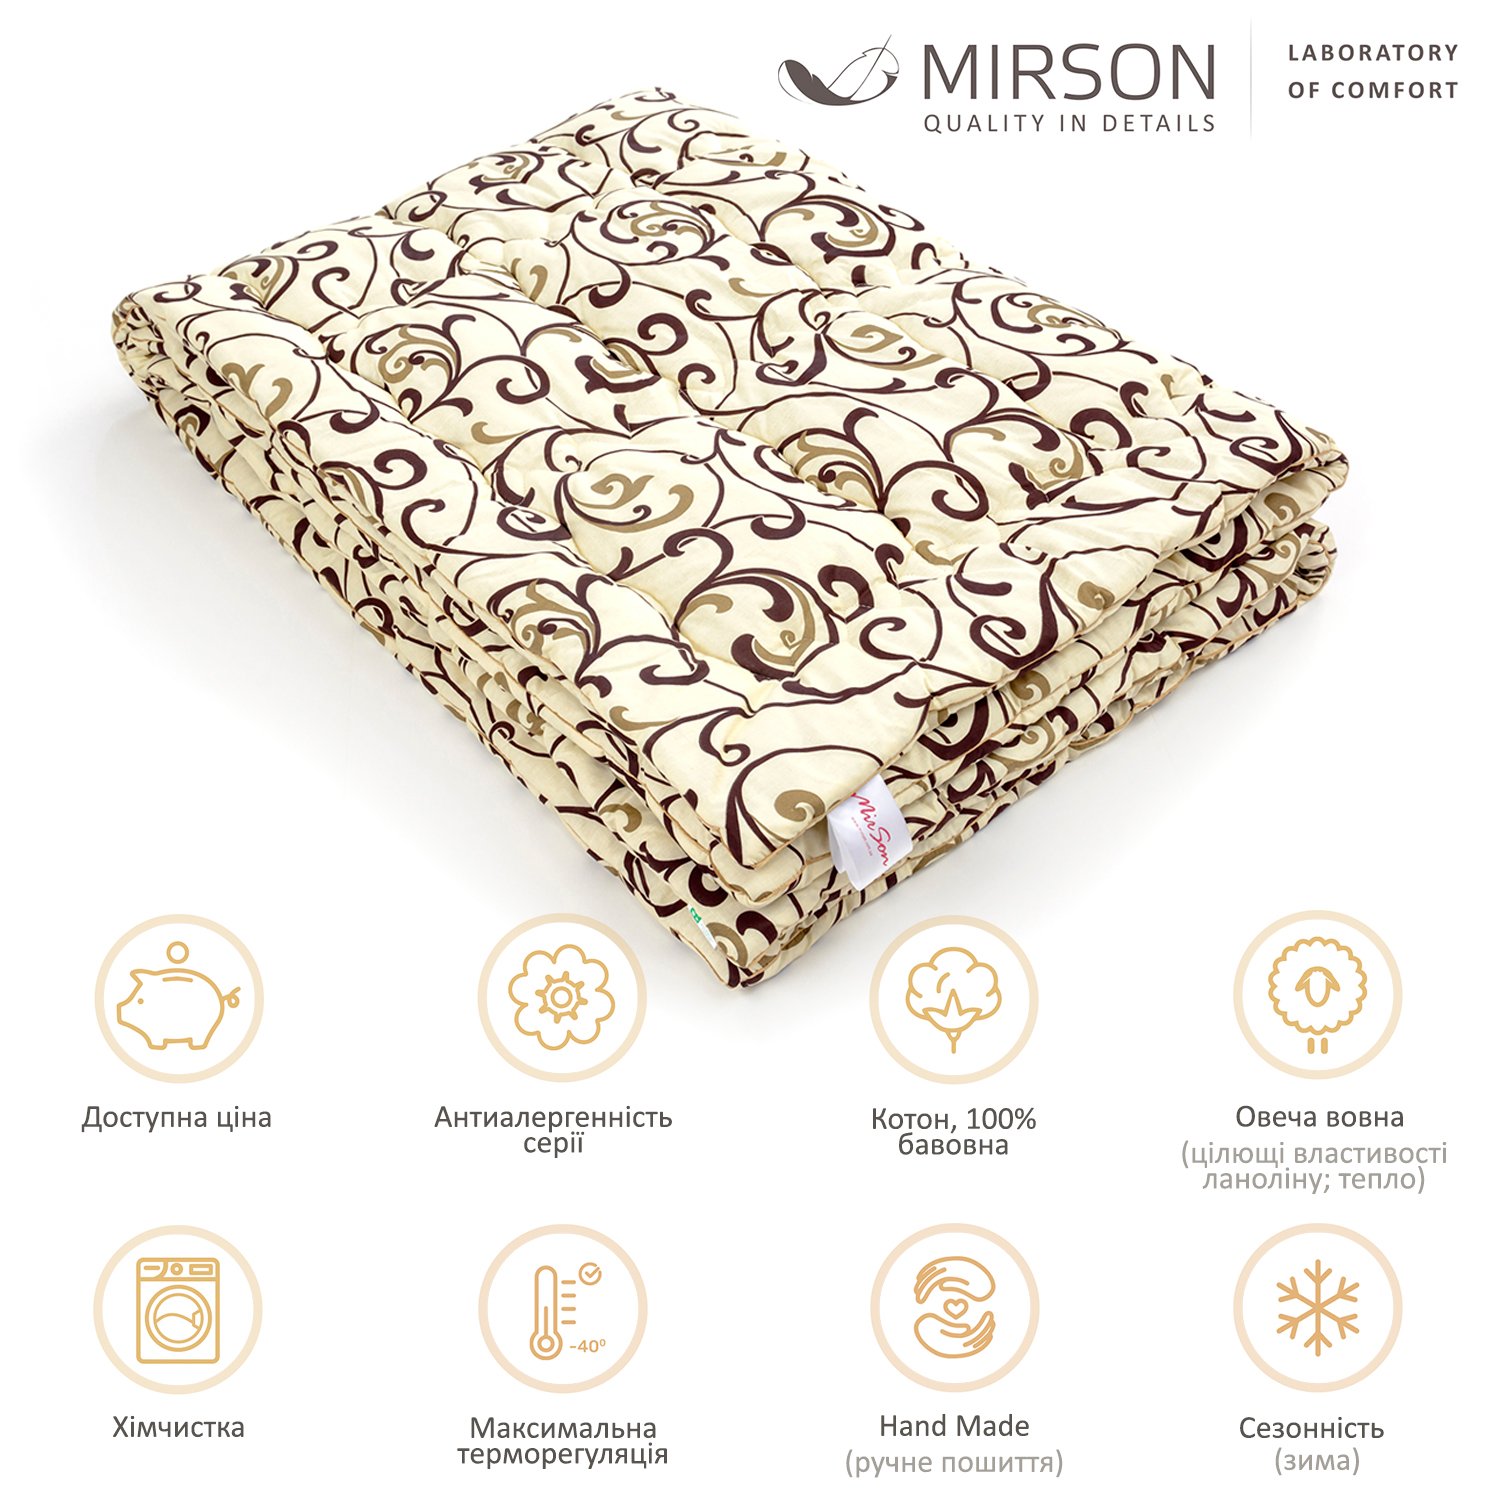 Одеяло шерстяное MirSon Hand Made №163, зимнее, 172x205 см, бежевое с узором - фото 5